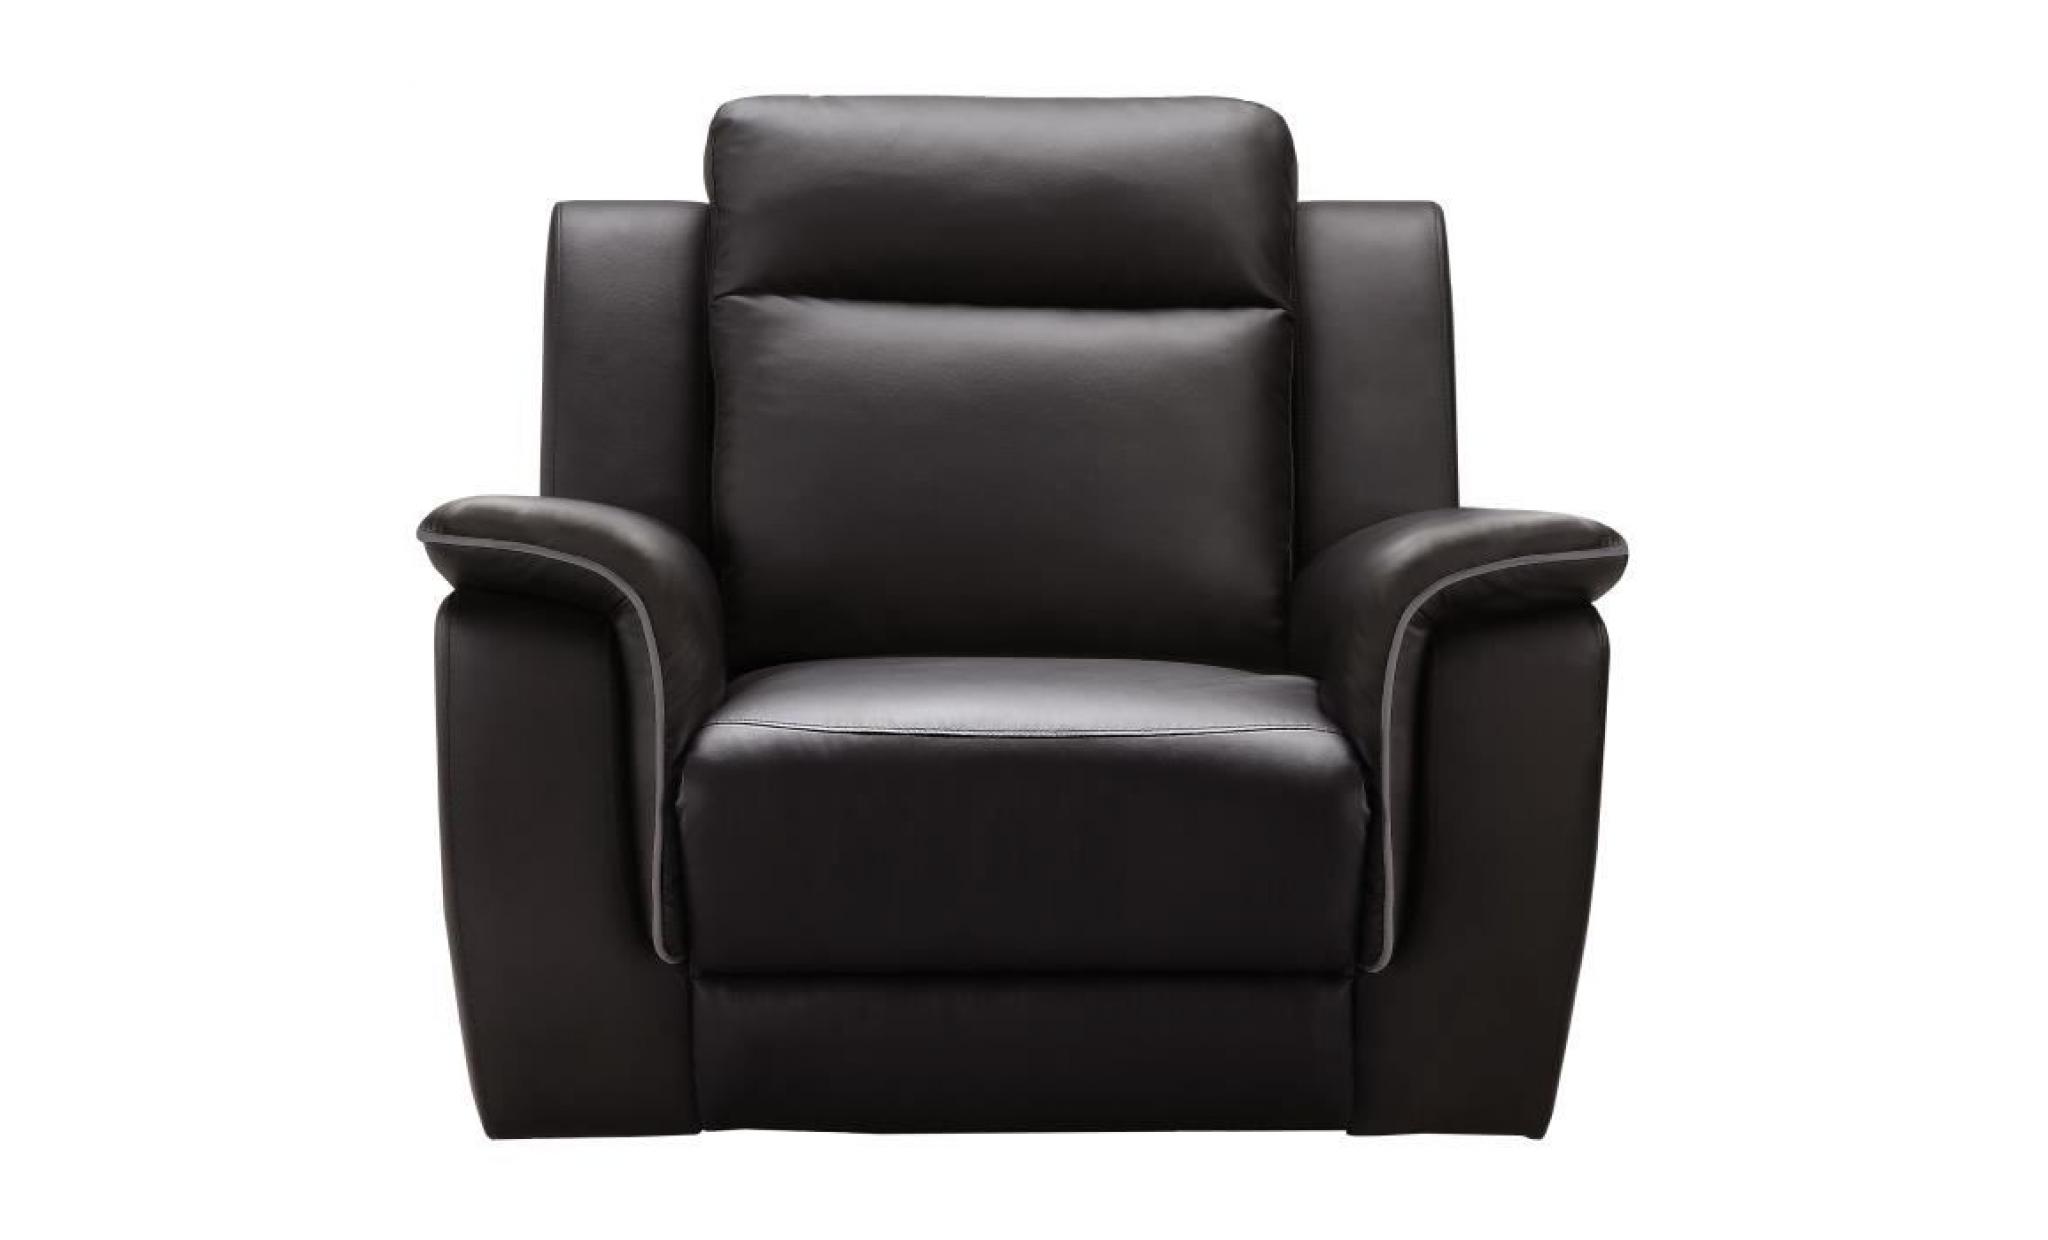 cocoon fauteuil de relaxation   simili marron   contemporain   l 108 x p 96 cm pas cher